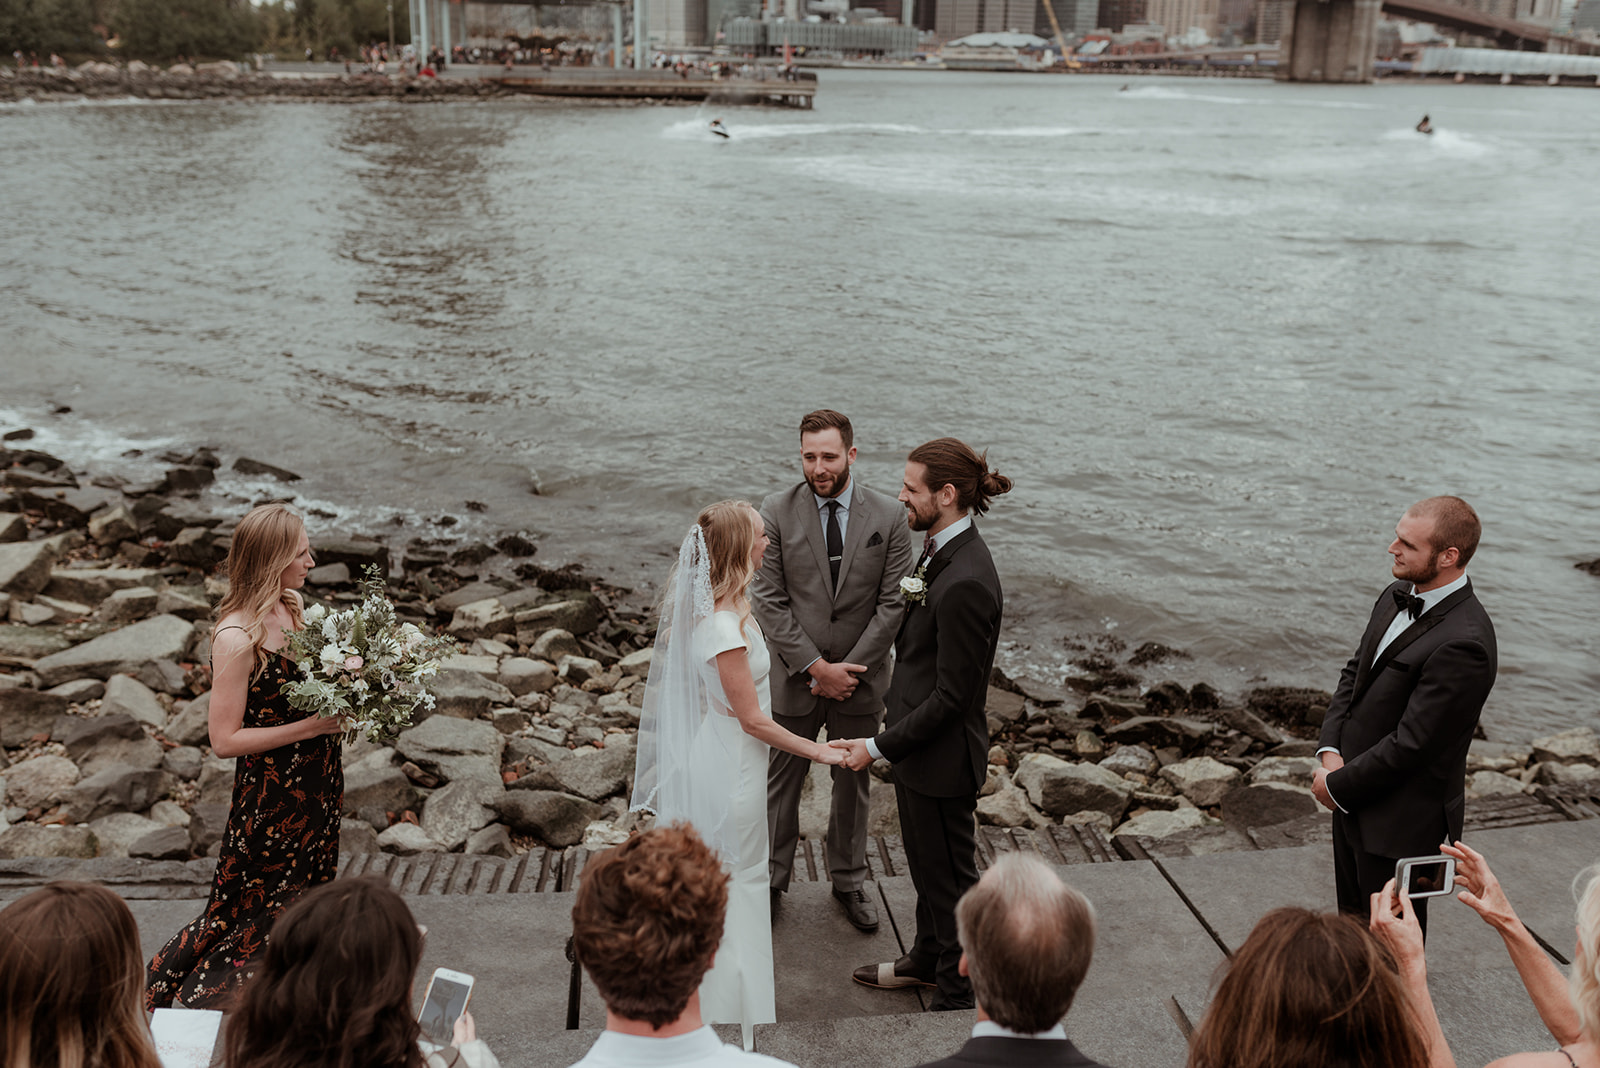 Brooklyn Bridge wedding captured by Glasgow wedding photographer Betty jnr co modern editorial